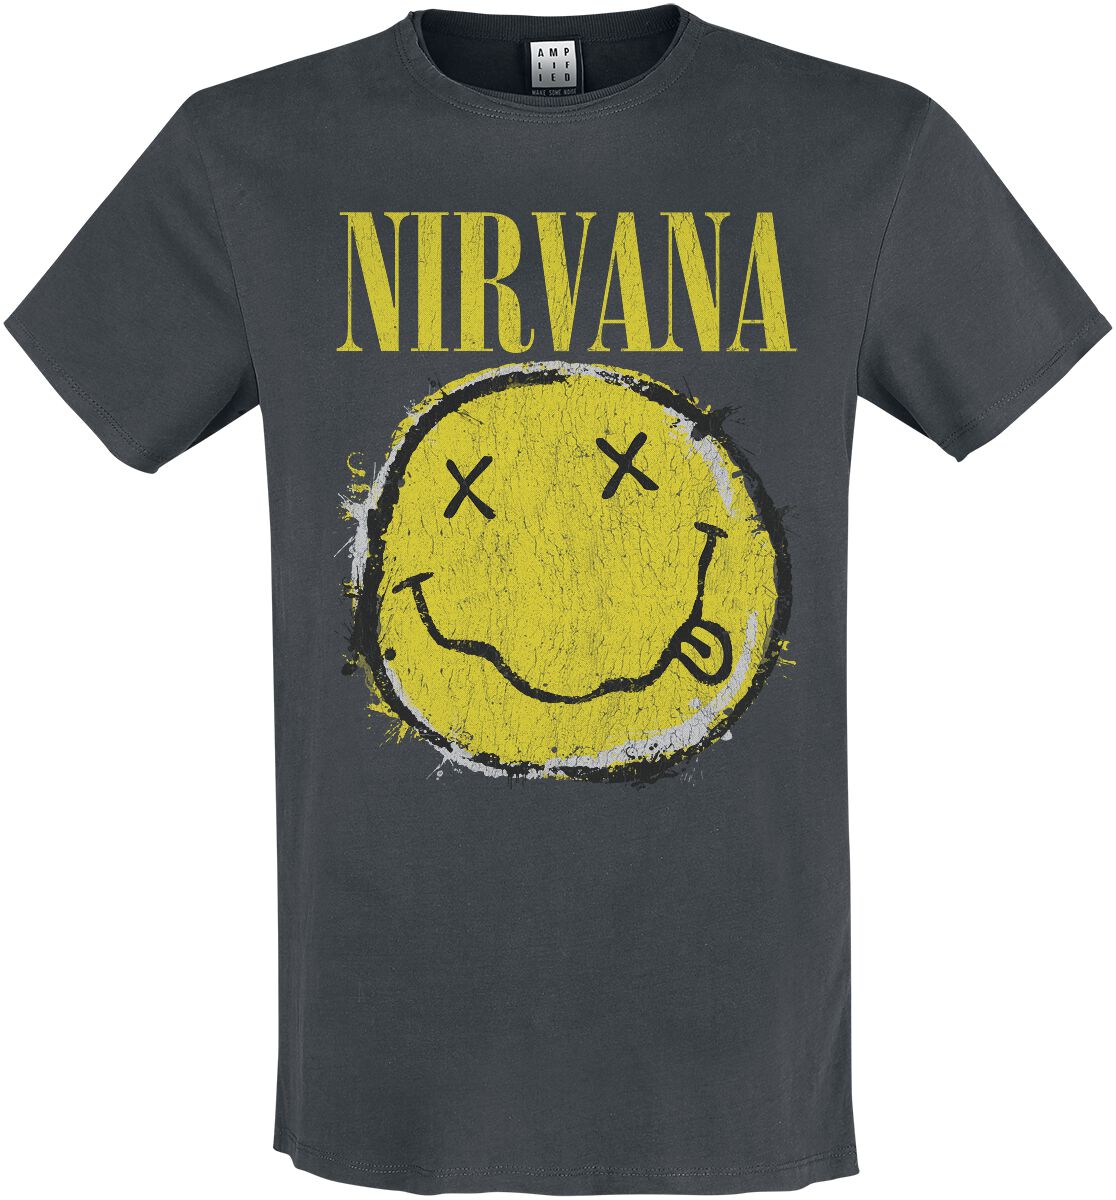 Nirvana T-Shirt - Amplified Collection - Worn Out Smiley - S bis 3XL - für Männer - Größe XXL - charcoal  - Lizenziertes Merchandise!